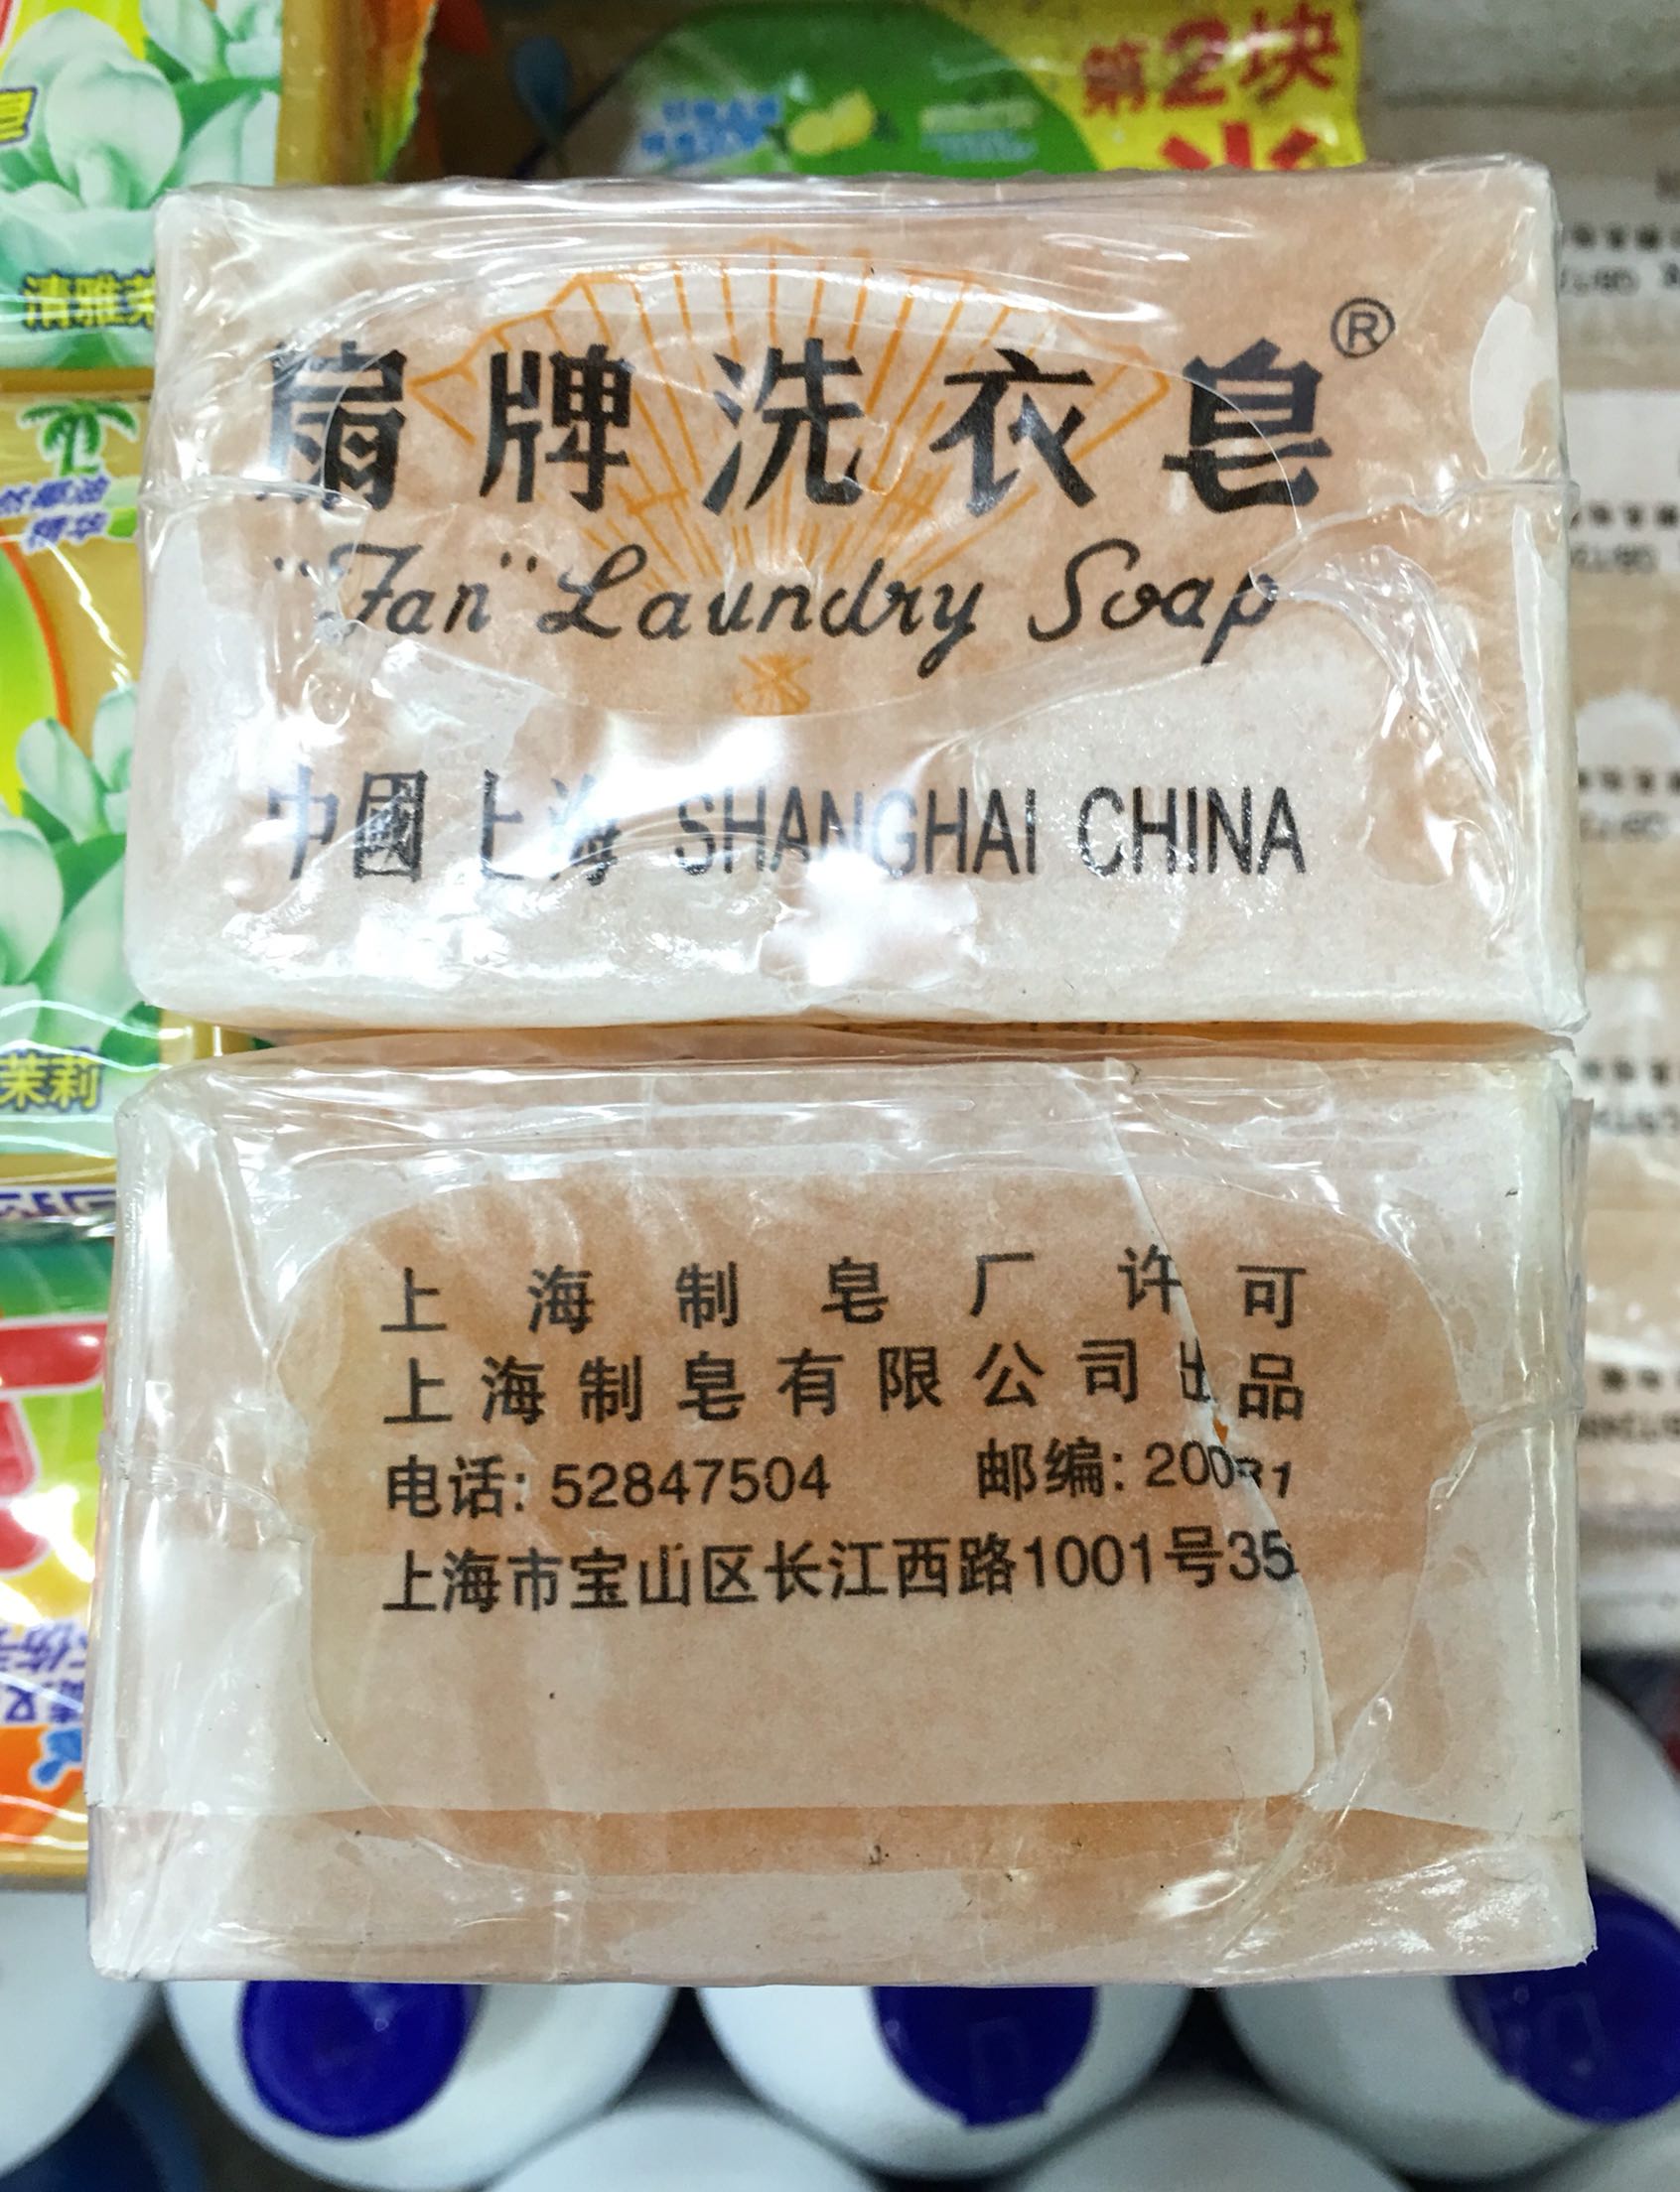 上海扇牌150g*5块肥皂洗衣皂透明皂杀菌去污渍无磷老牌子3条包邮